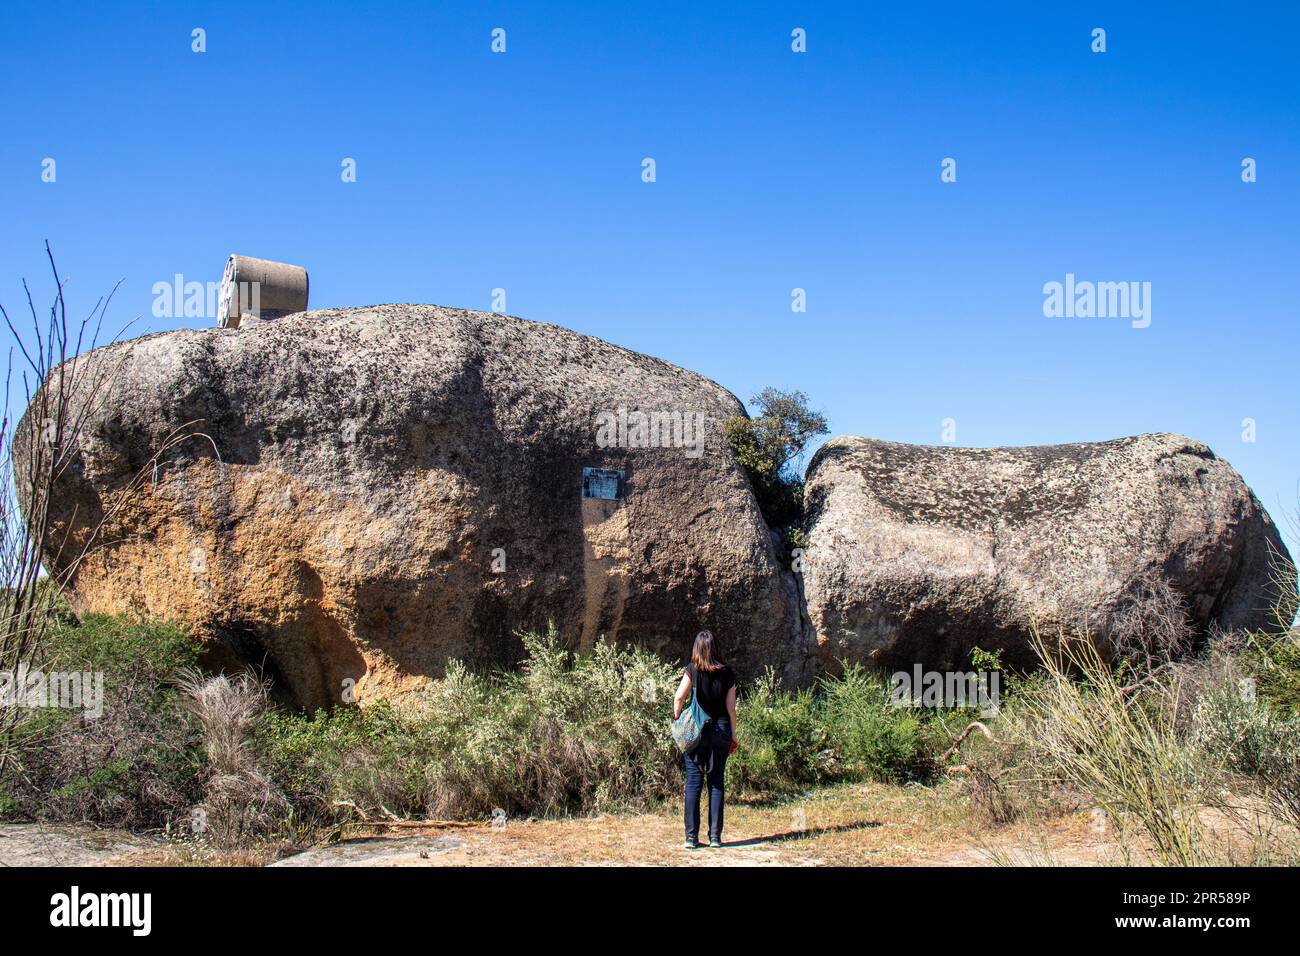 Turista observando algunas de las rocas de granito en la Reserva Natural de Los Barruecos, Malpartida de Cáceres, España Banque D'Images